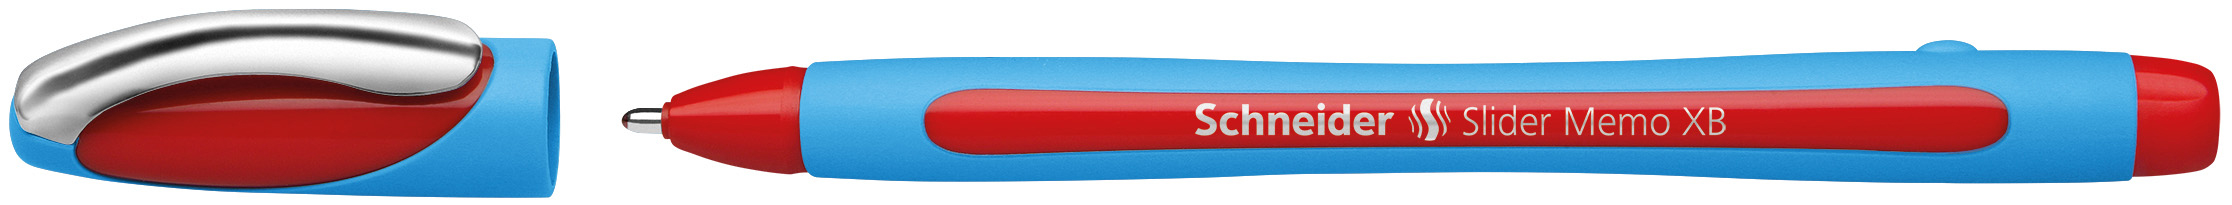 SCHNEIDER Stylo Slider Memo XB 0.7mm 150202 rouge